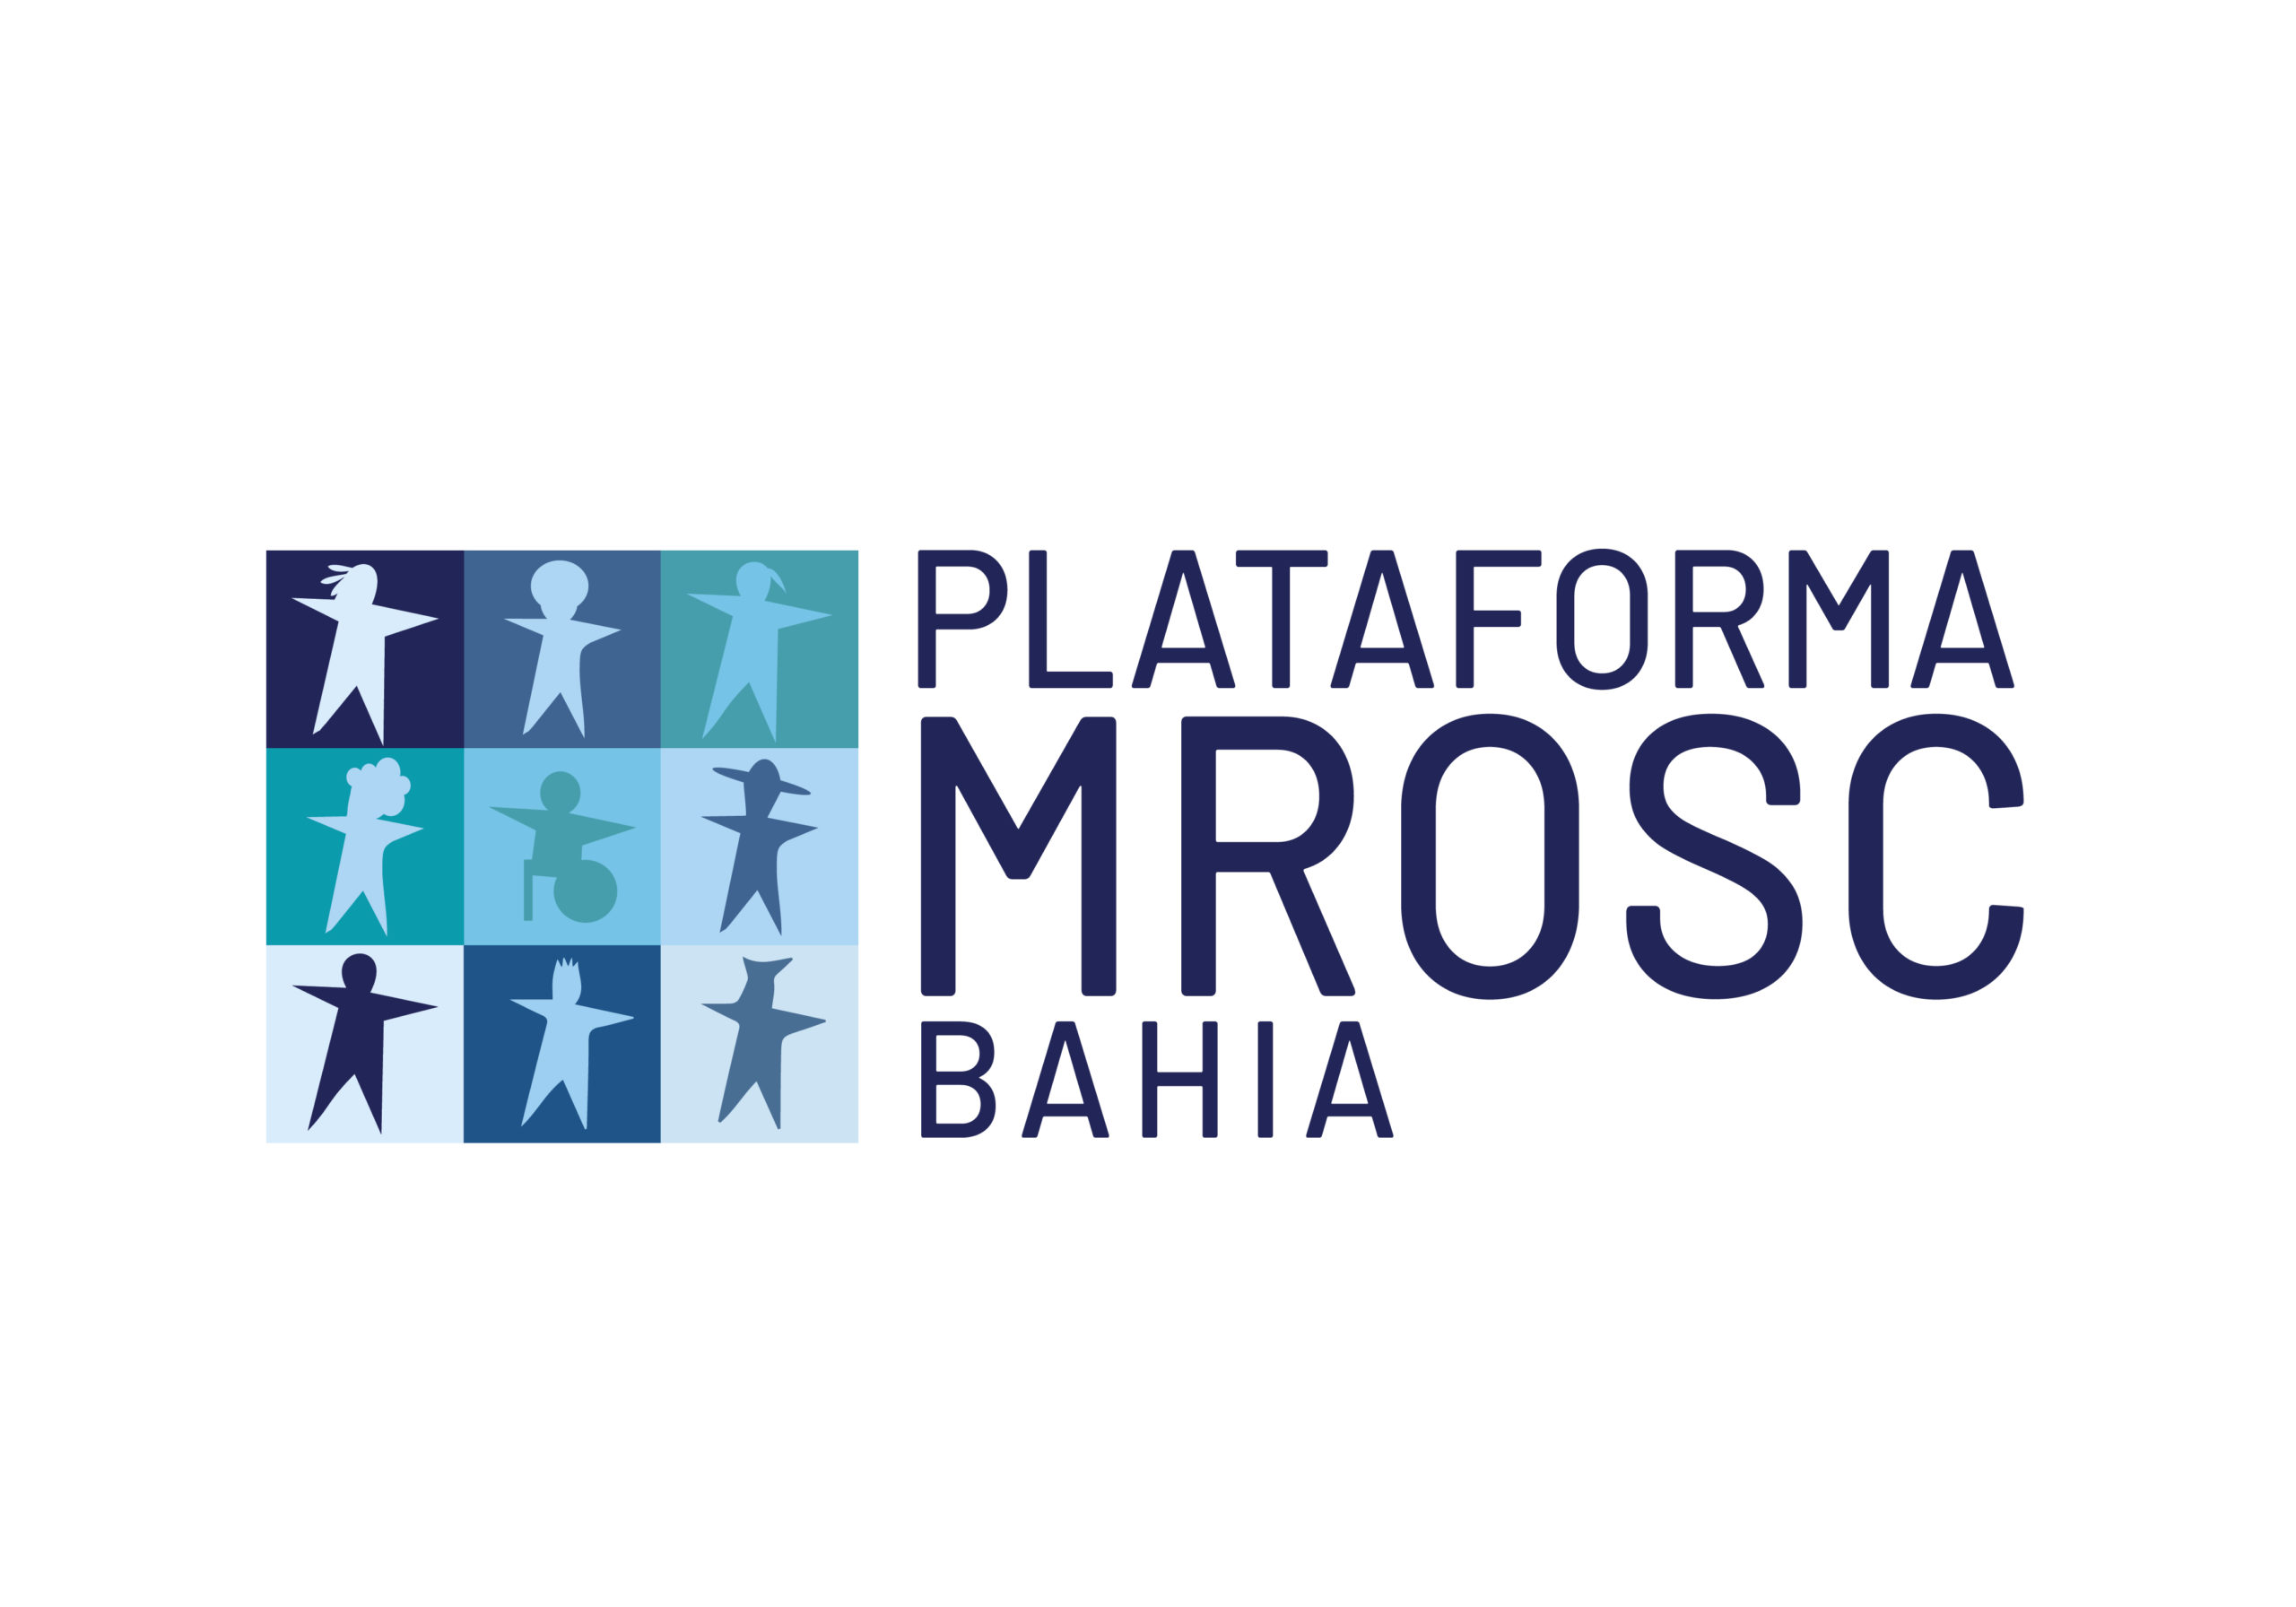 Plataforma MROSC Bahia realiza consulta sobre cobrança e tarifas bancárias